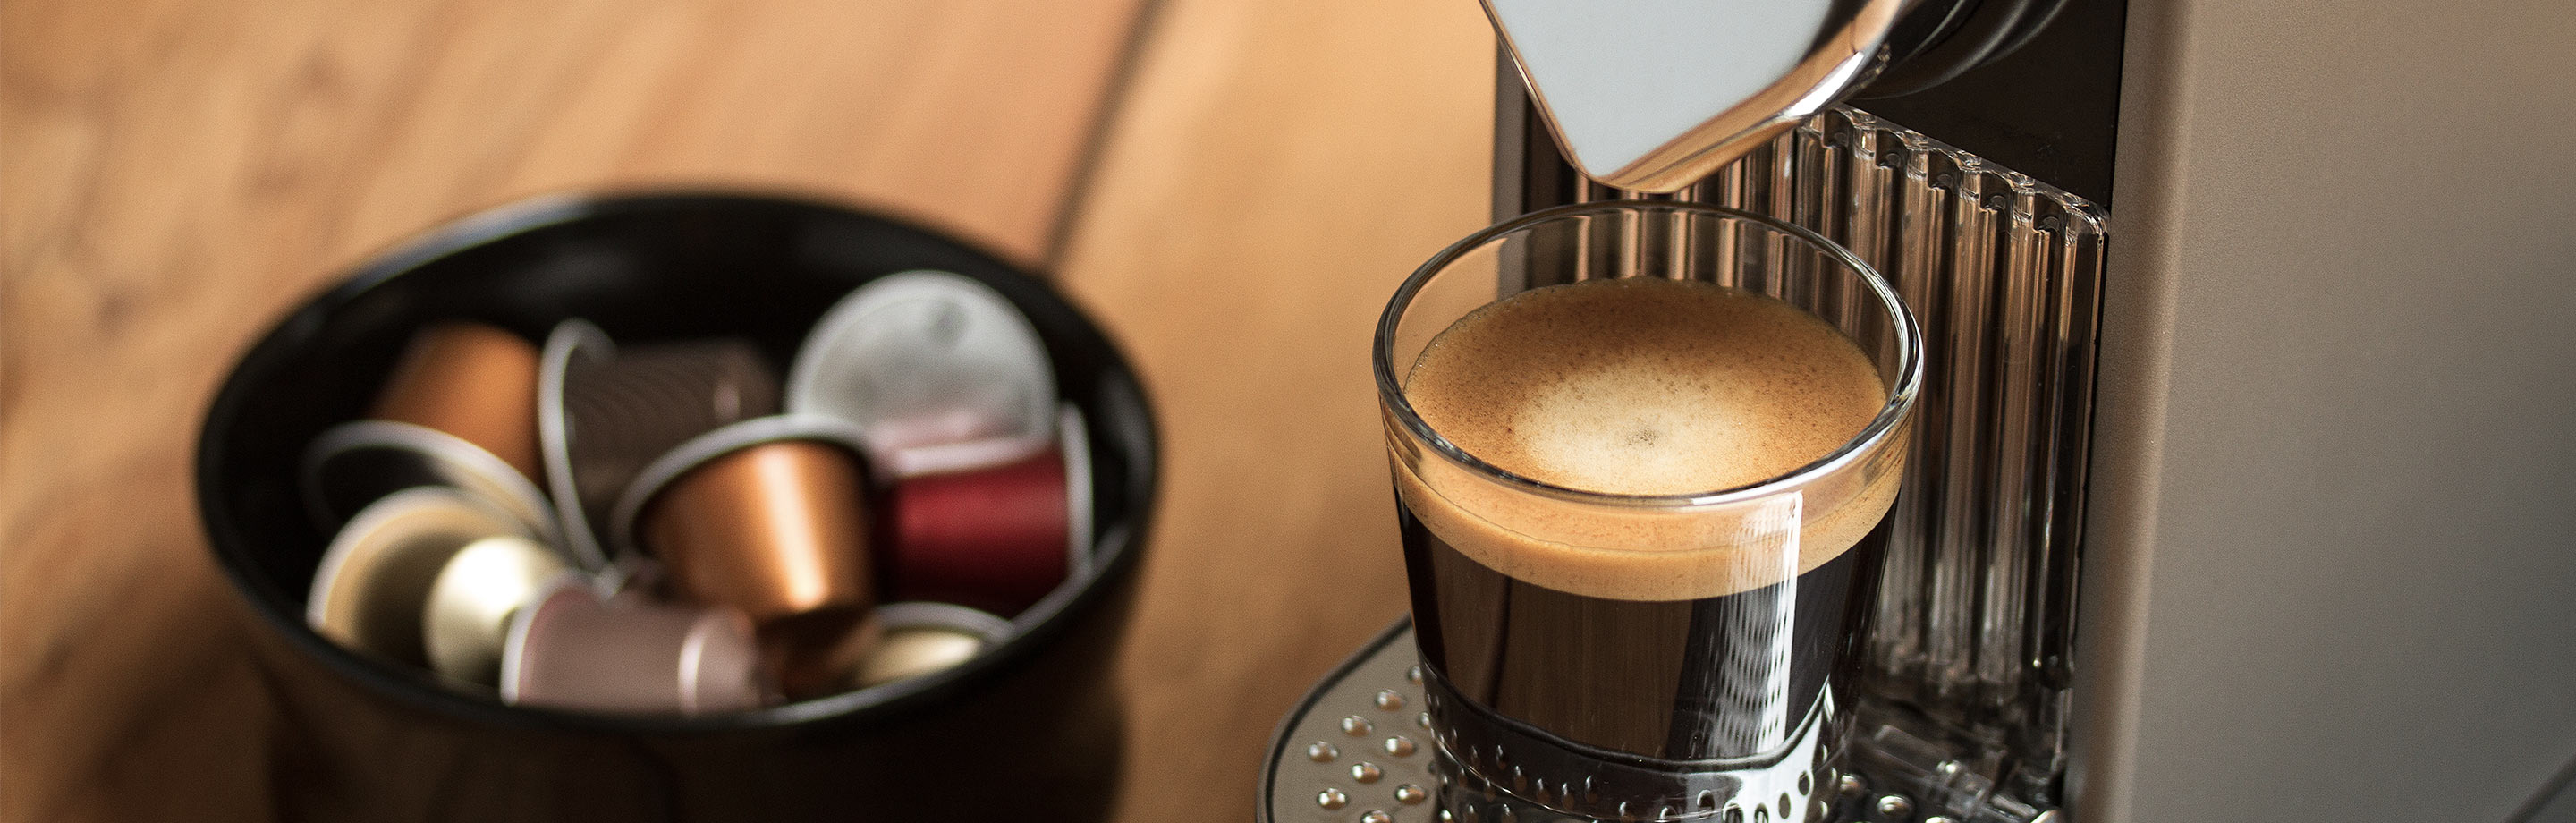 Eine Nespresso-Maschine mit einem gefüllten Espresso-Glas. Im Hintergrund befinden sich verschiedene Kaffeekapseln.